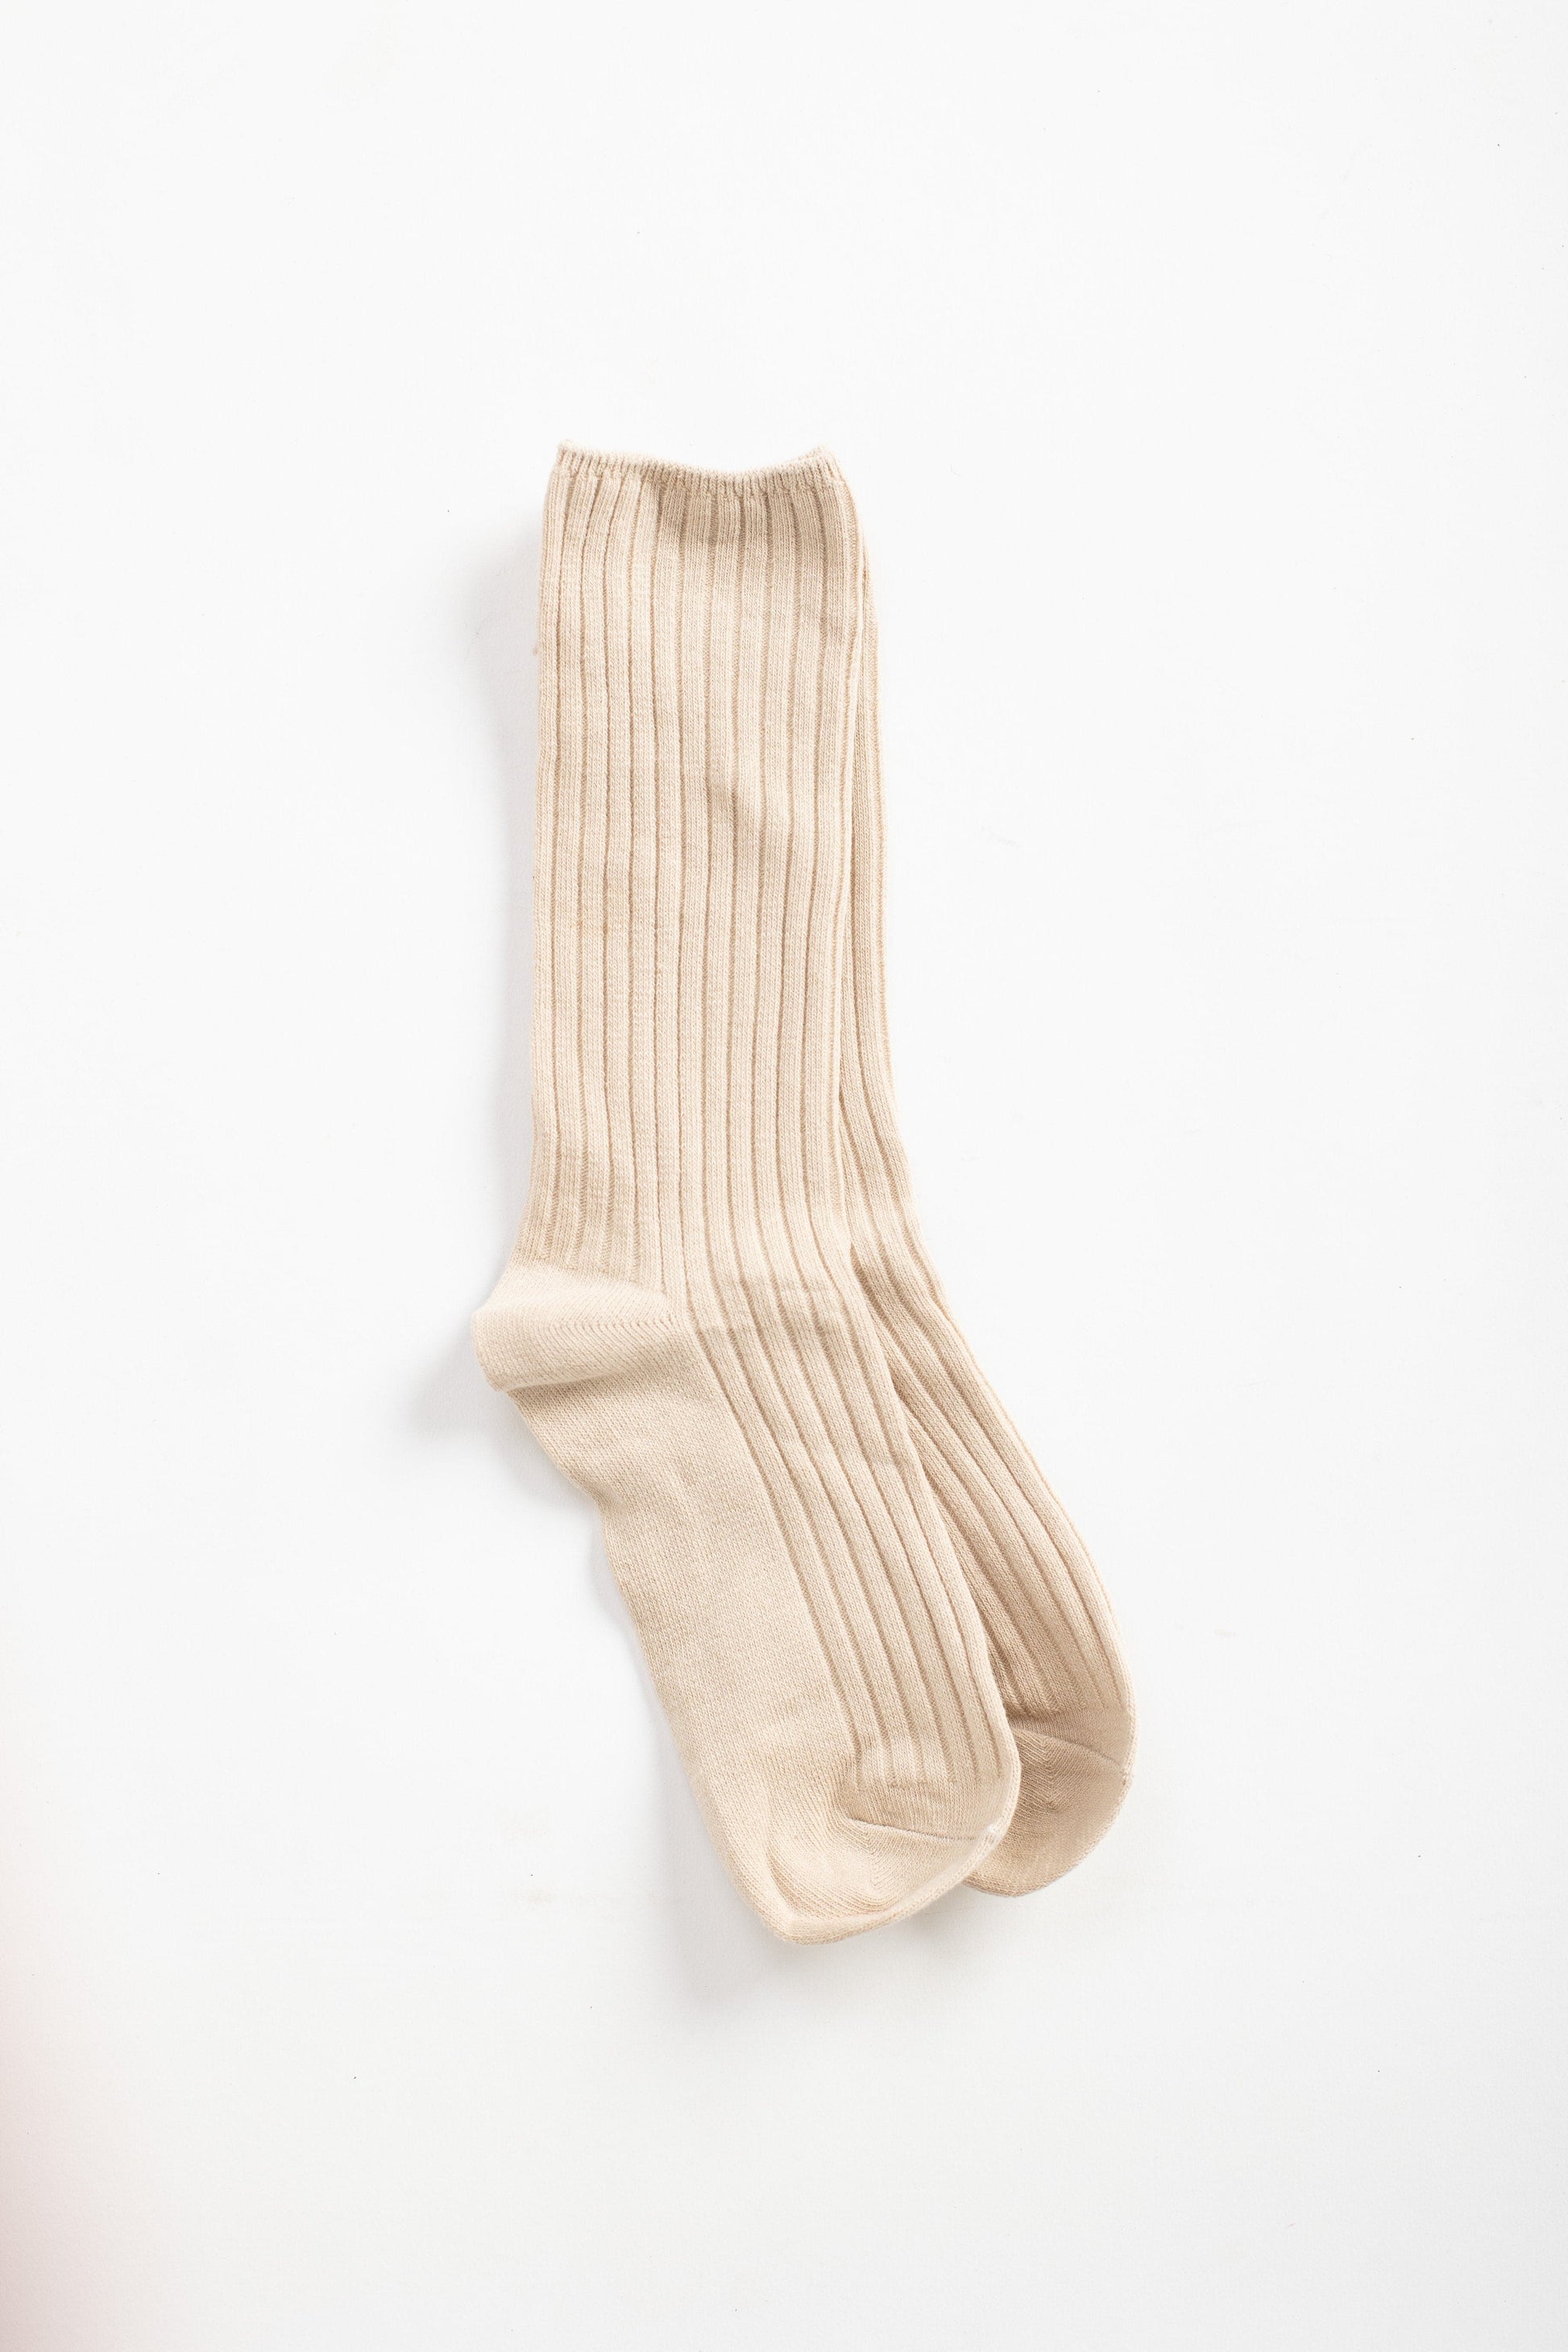 Sandhill Ribbed Socks WOMEN'S SOCKS Ali Express Ivory OS 